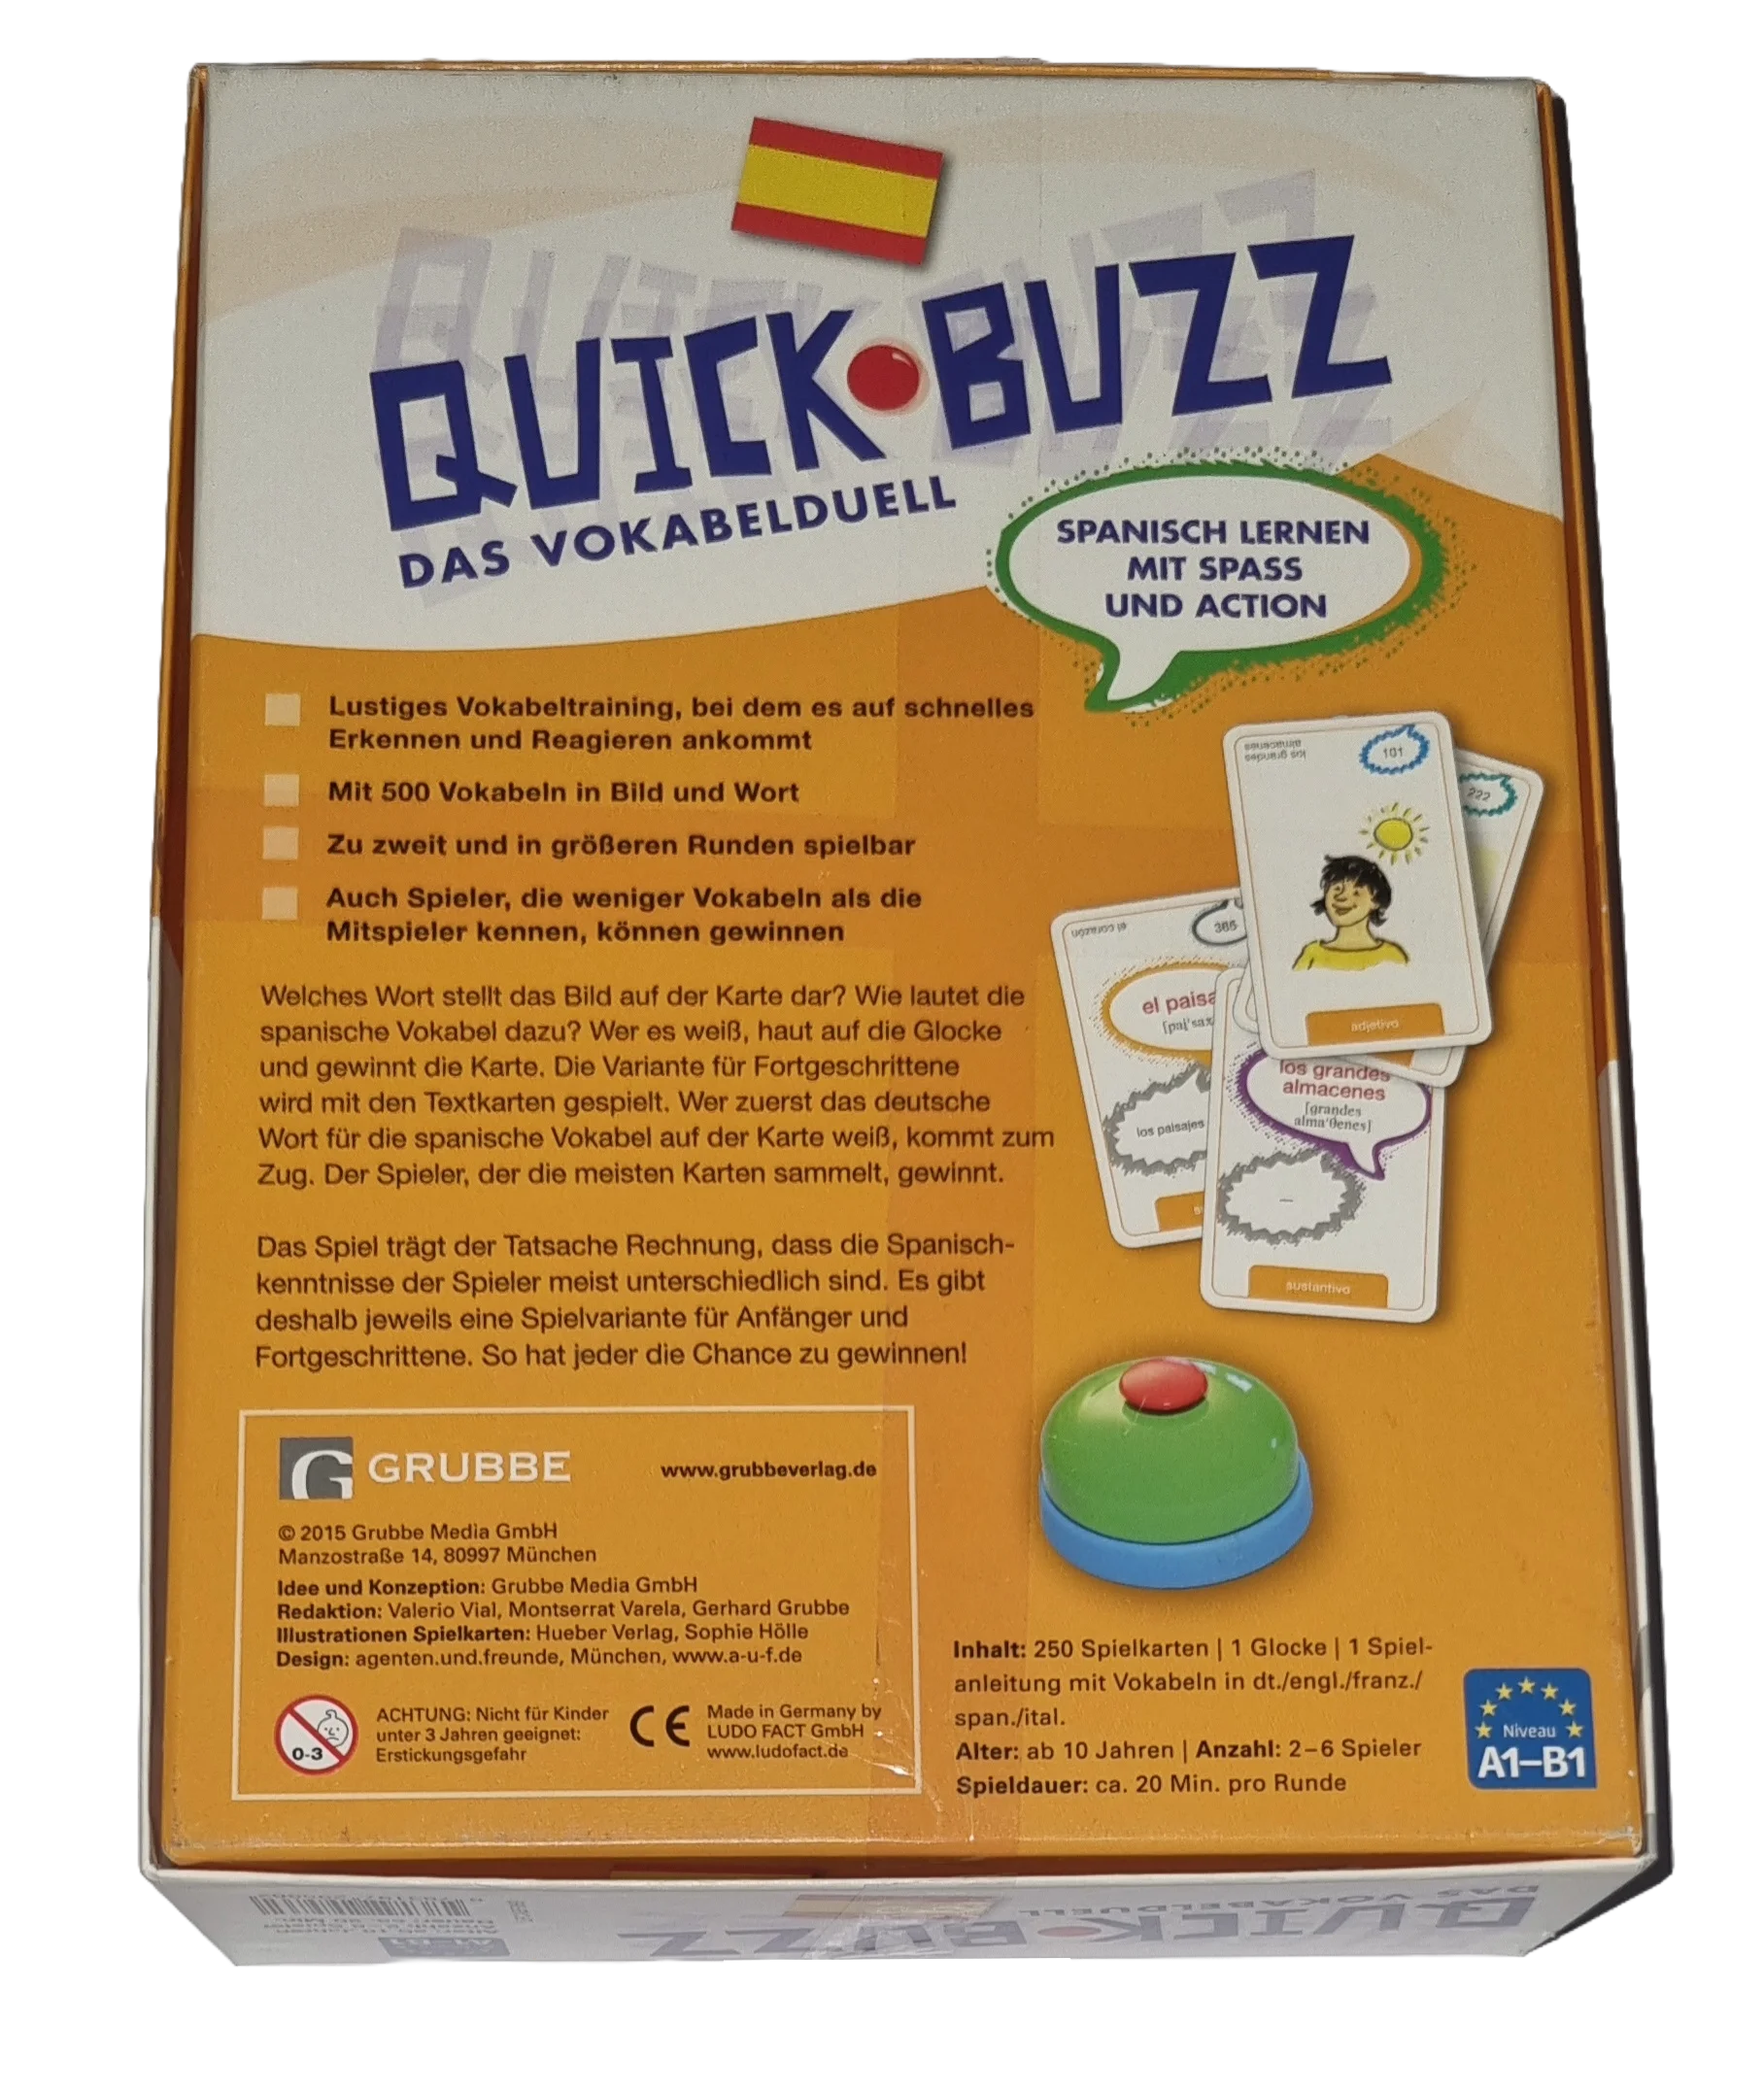 Quick Buzz Das Vokabelduell Spanisch